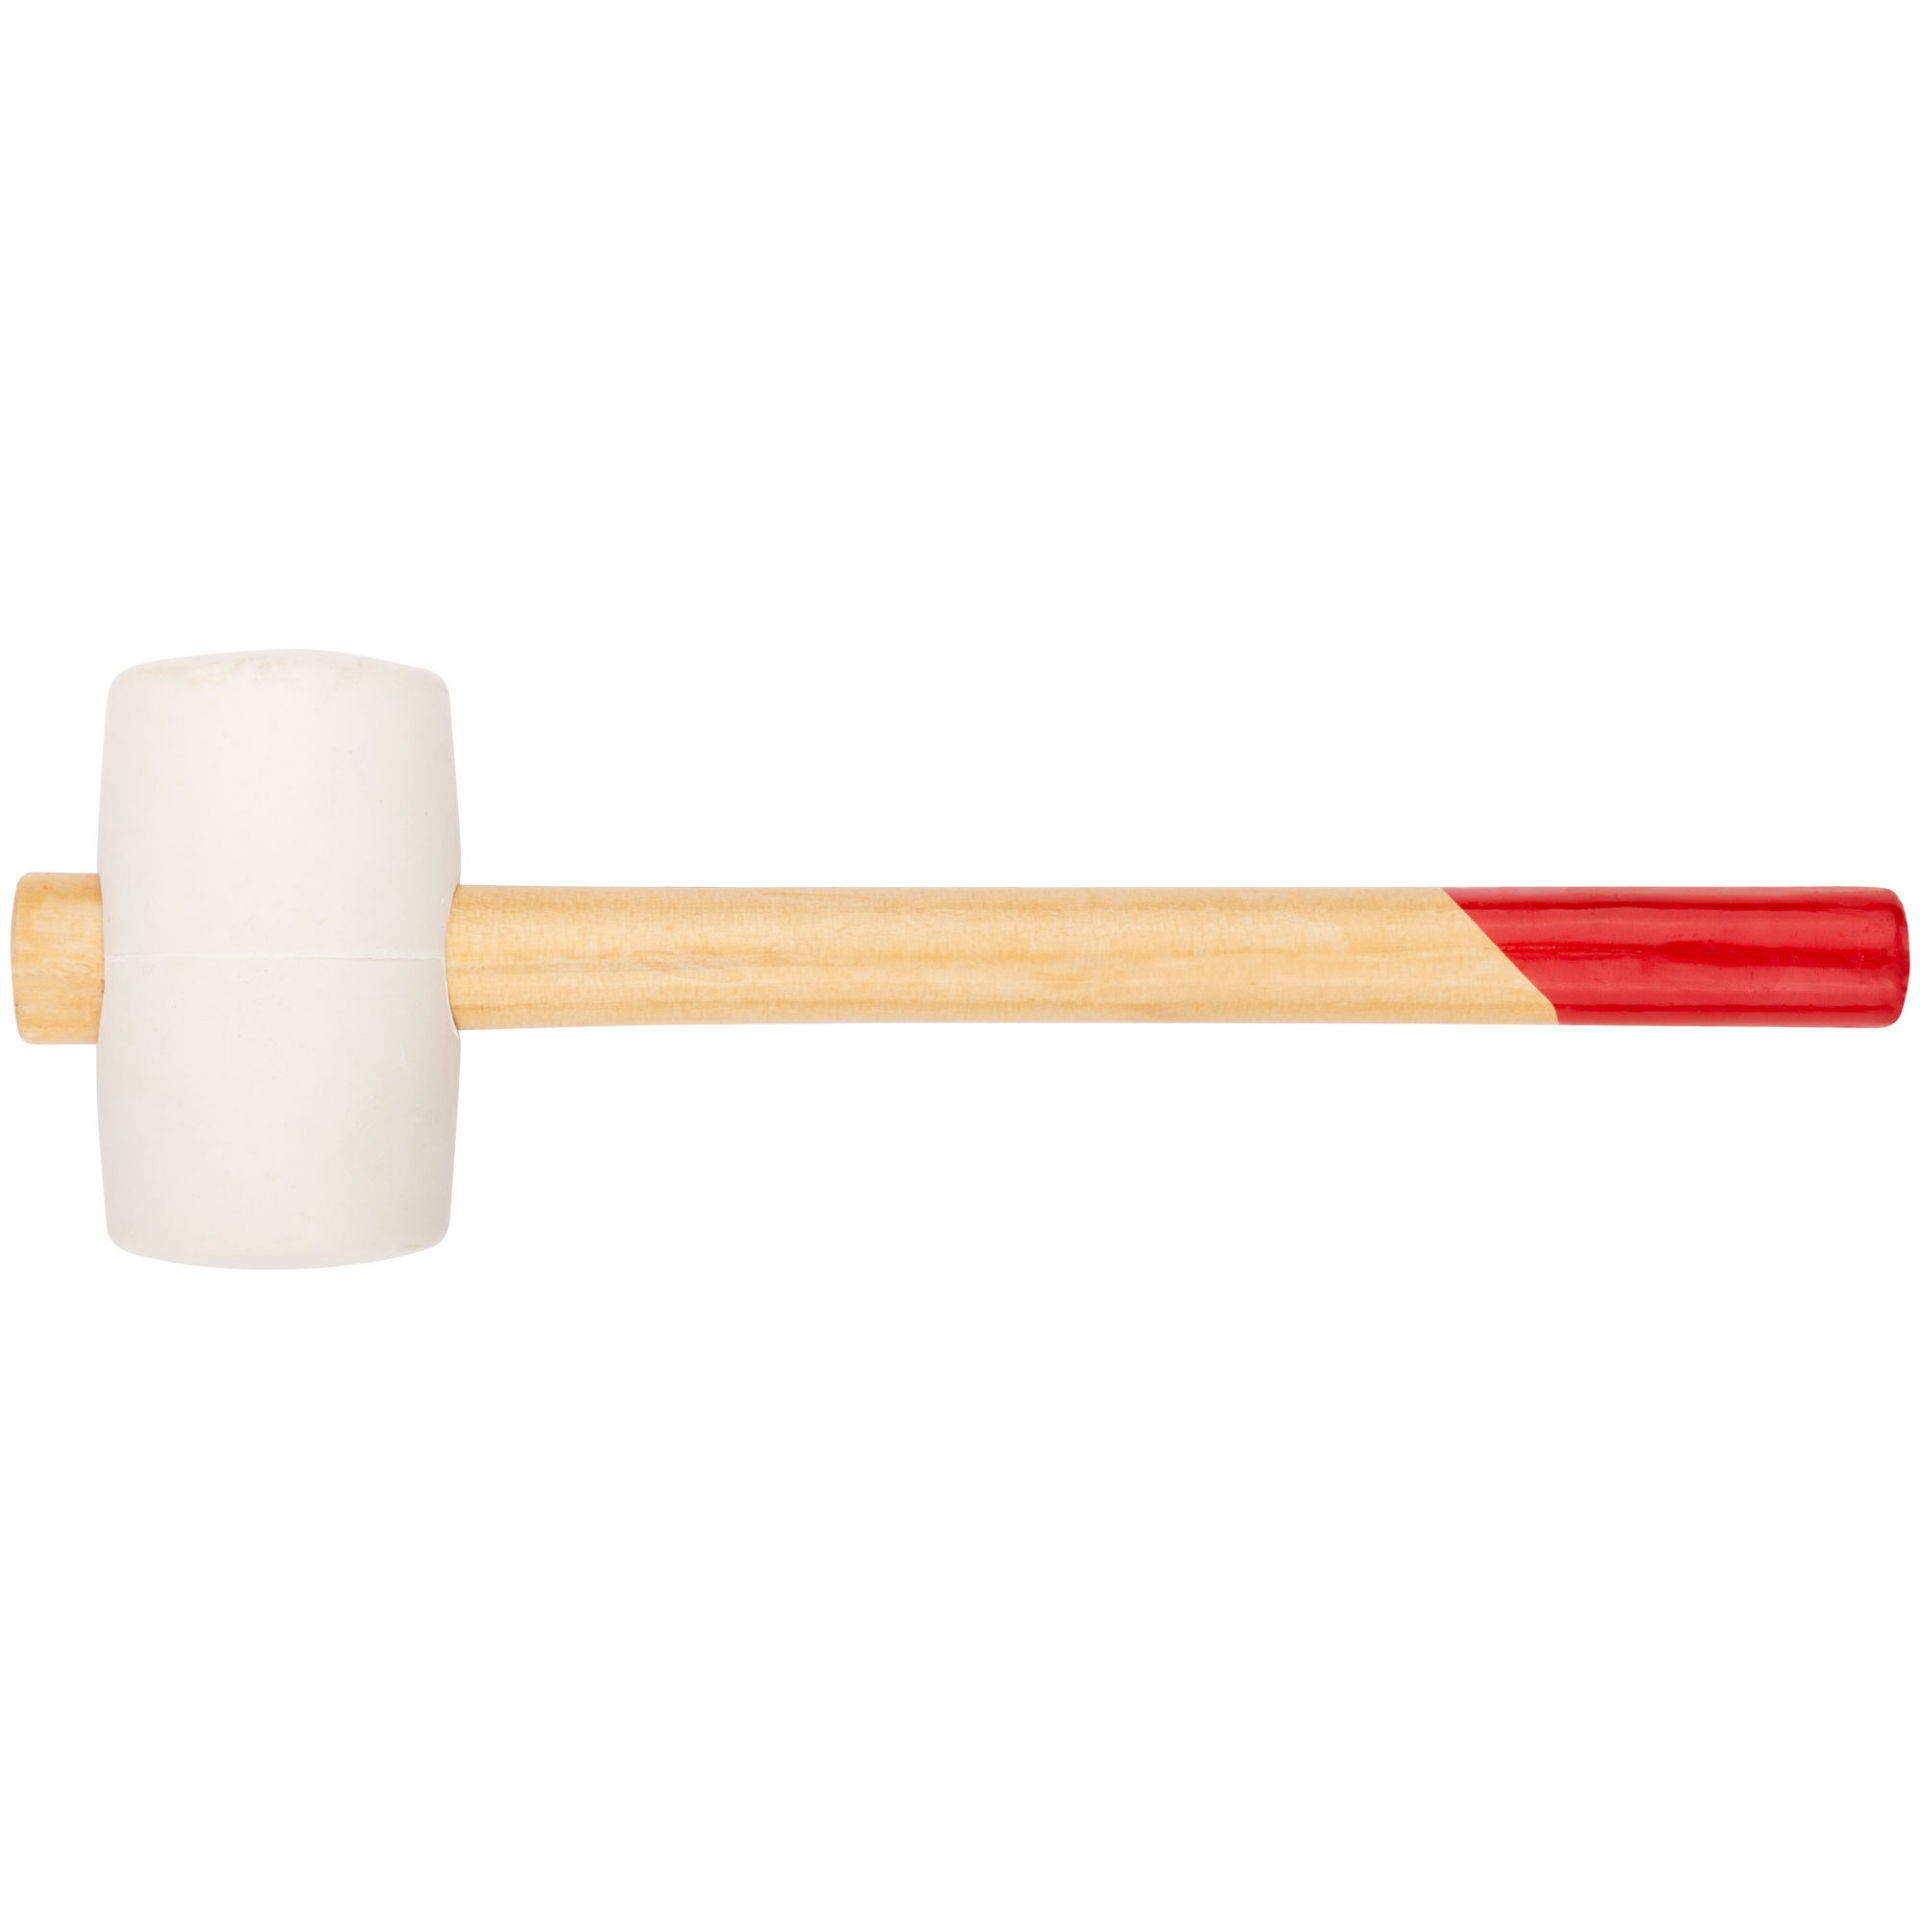 Киянка резиновая белая, деревянная ручка 60 мм ( 450 гр )